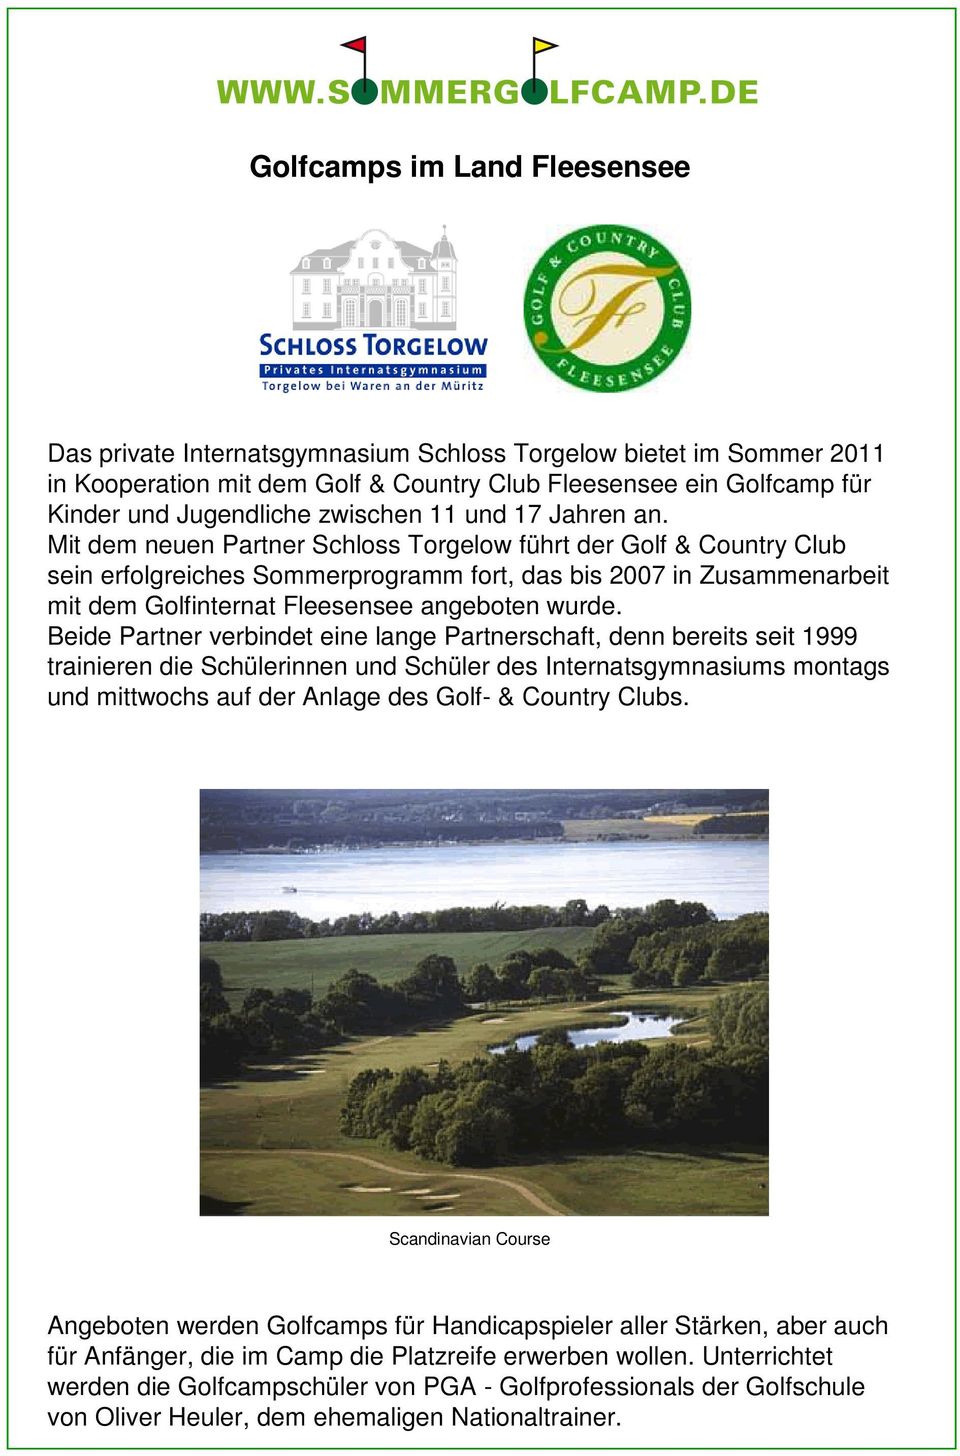 Mit dem neuen Partner Schloss Torgelow führt der Golf & Country Club sein erfolgreiches Sommerprogramm fort, das bis 2007 in Zusammenarbeit mit dem Golfinternat Fleesensee angeboten wurde.